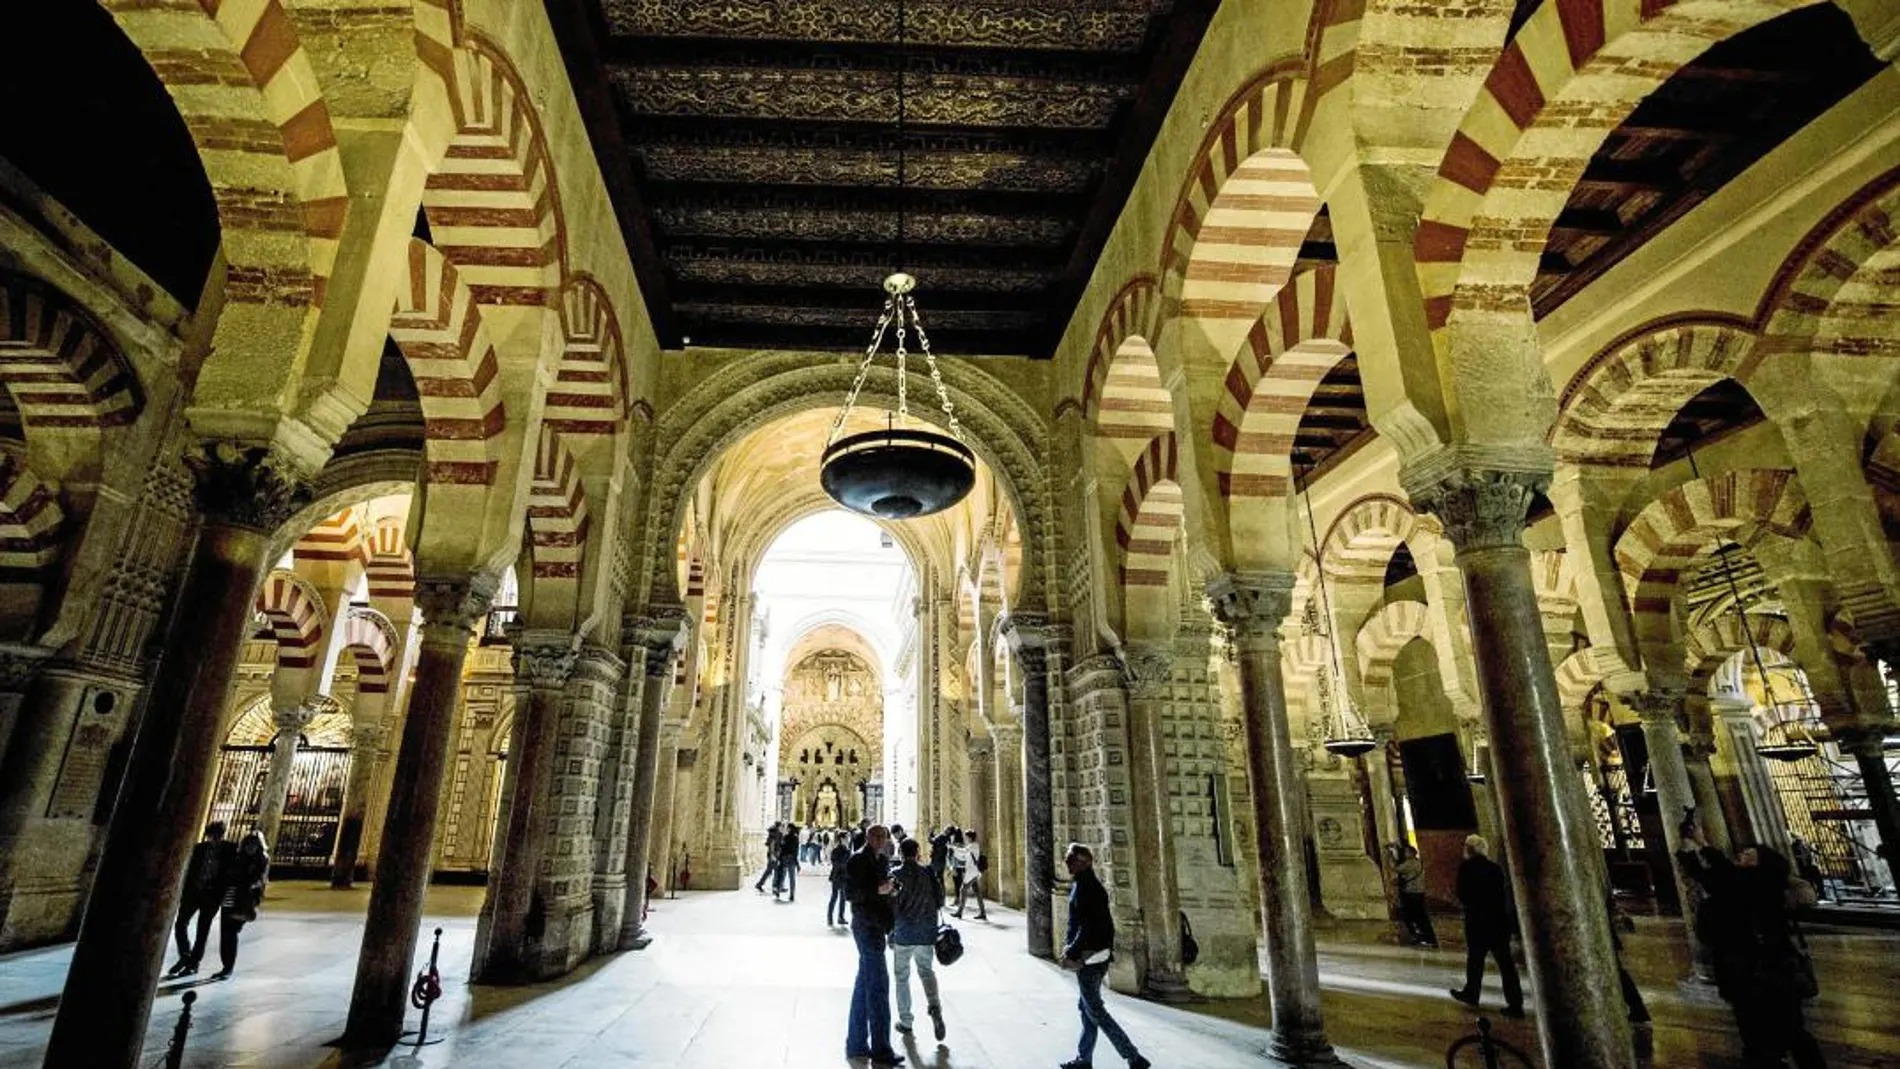 La Mezquita de Córdoba fue registrada por primera vez en 2006, por 30 euros. Aún así, su titularidad es clara desde la época de Fernando III